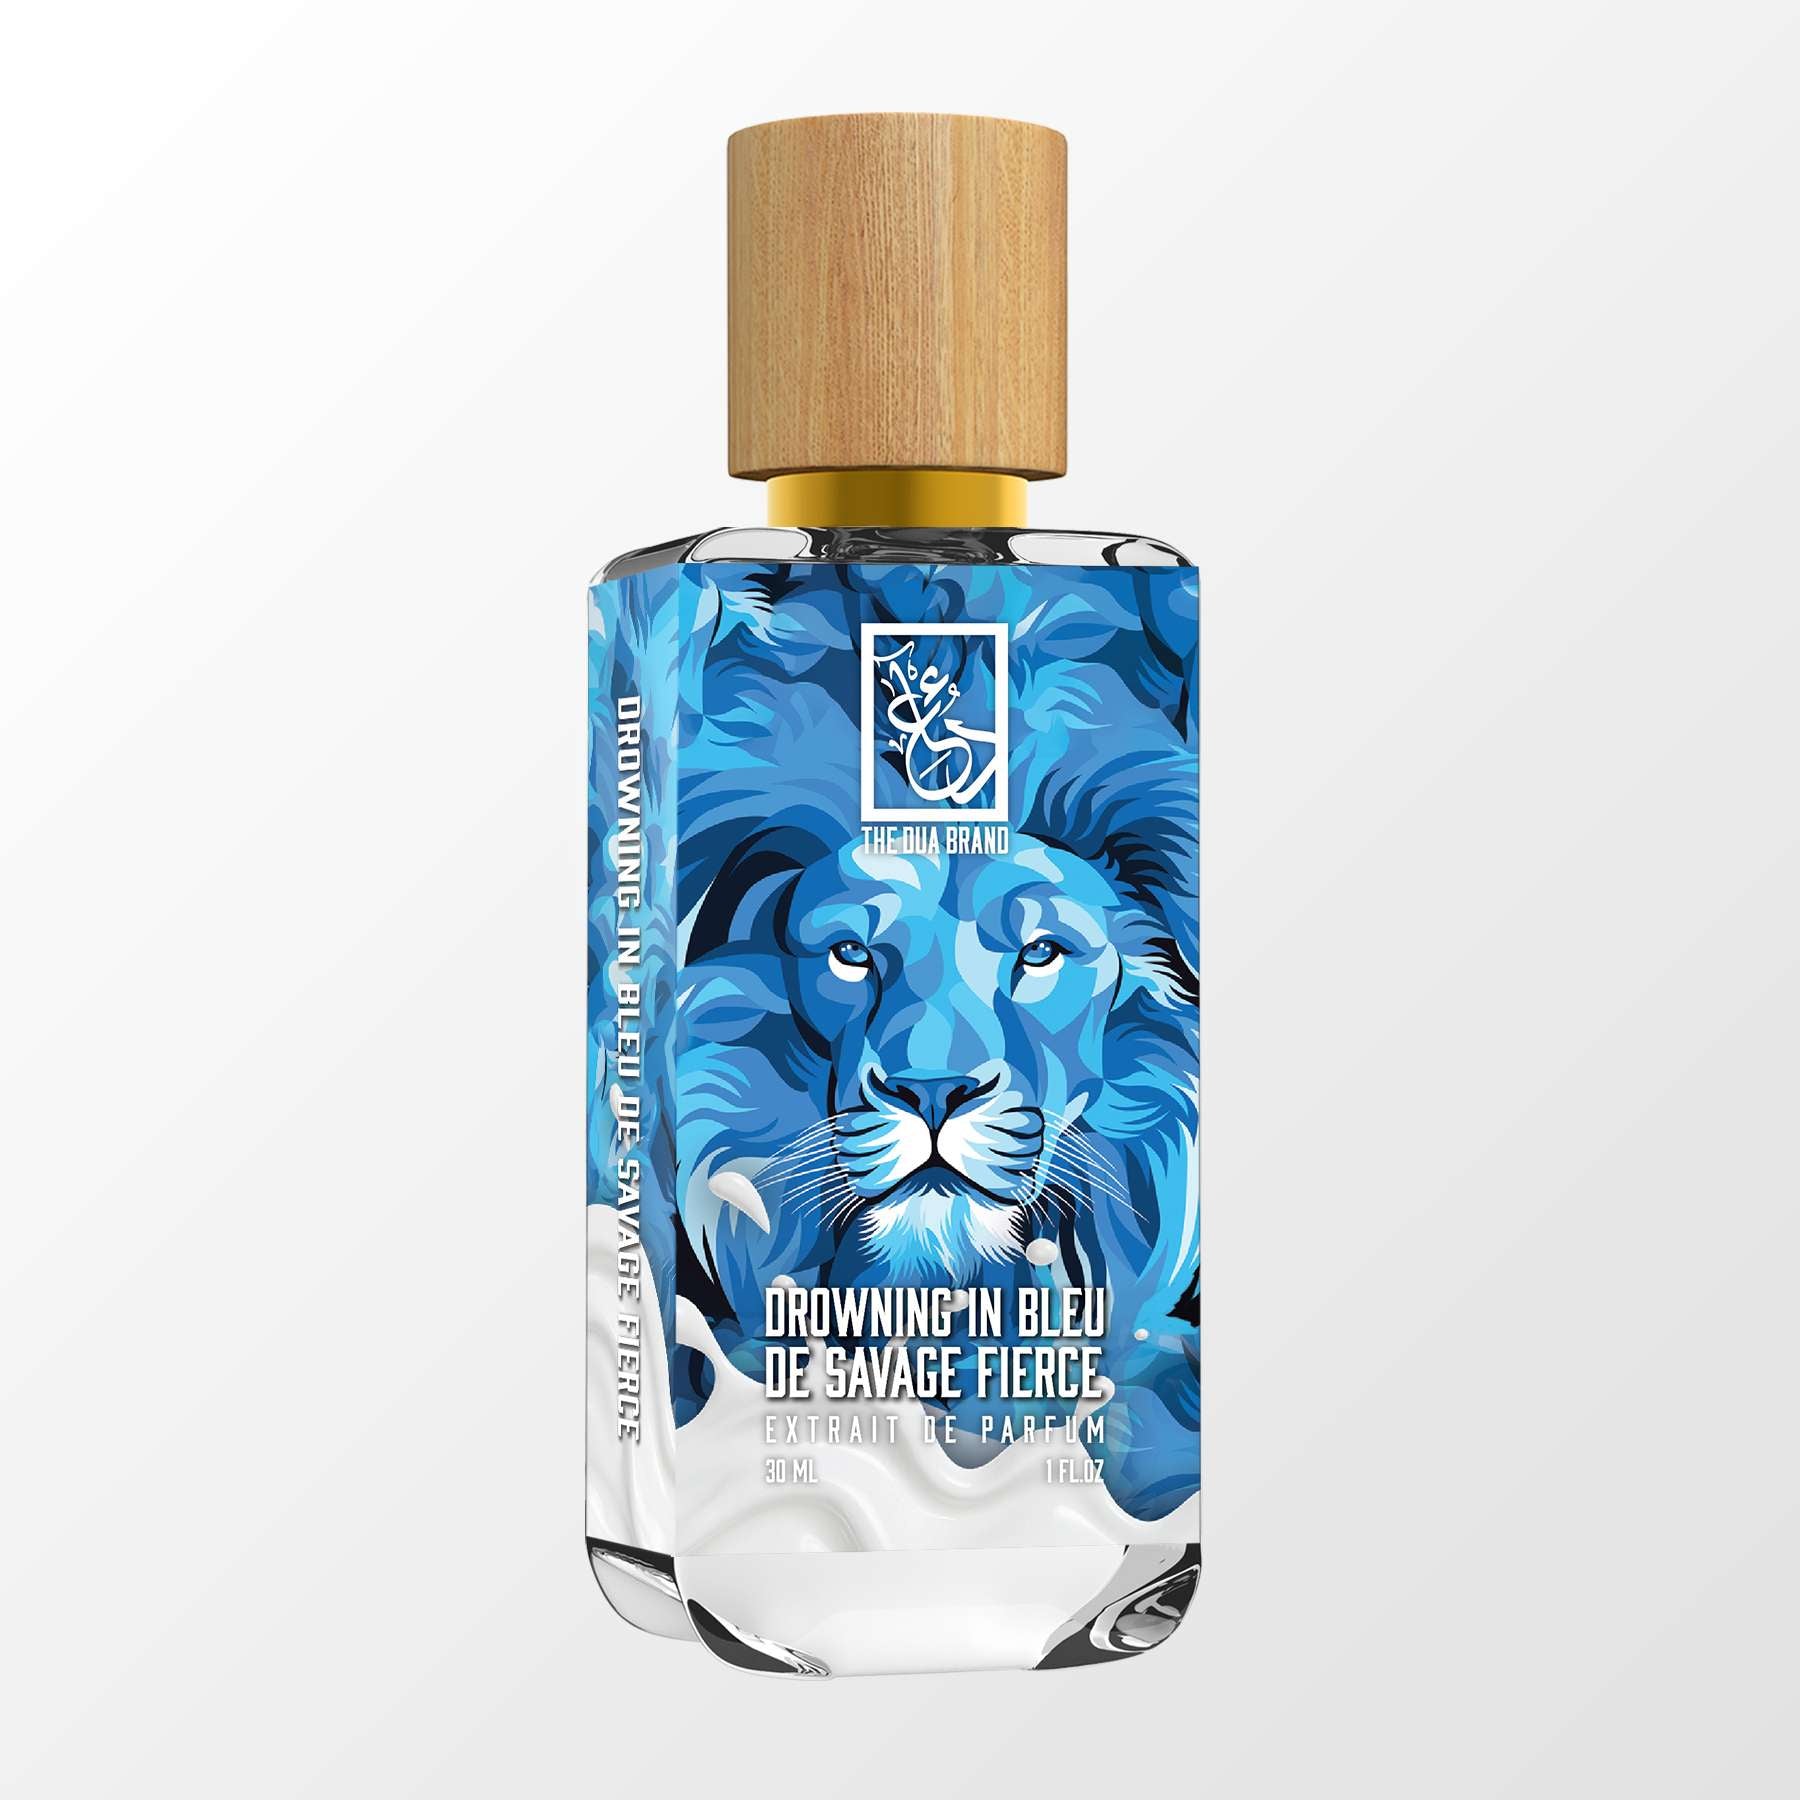 Bleu de Chanel Parfum Review  The GOAT of Blue Fragrances 